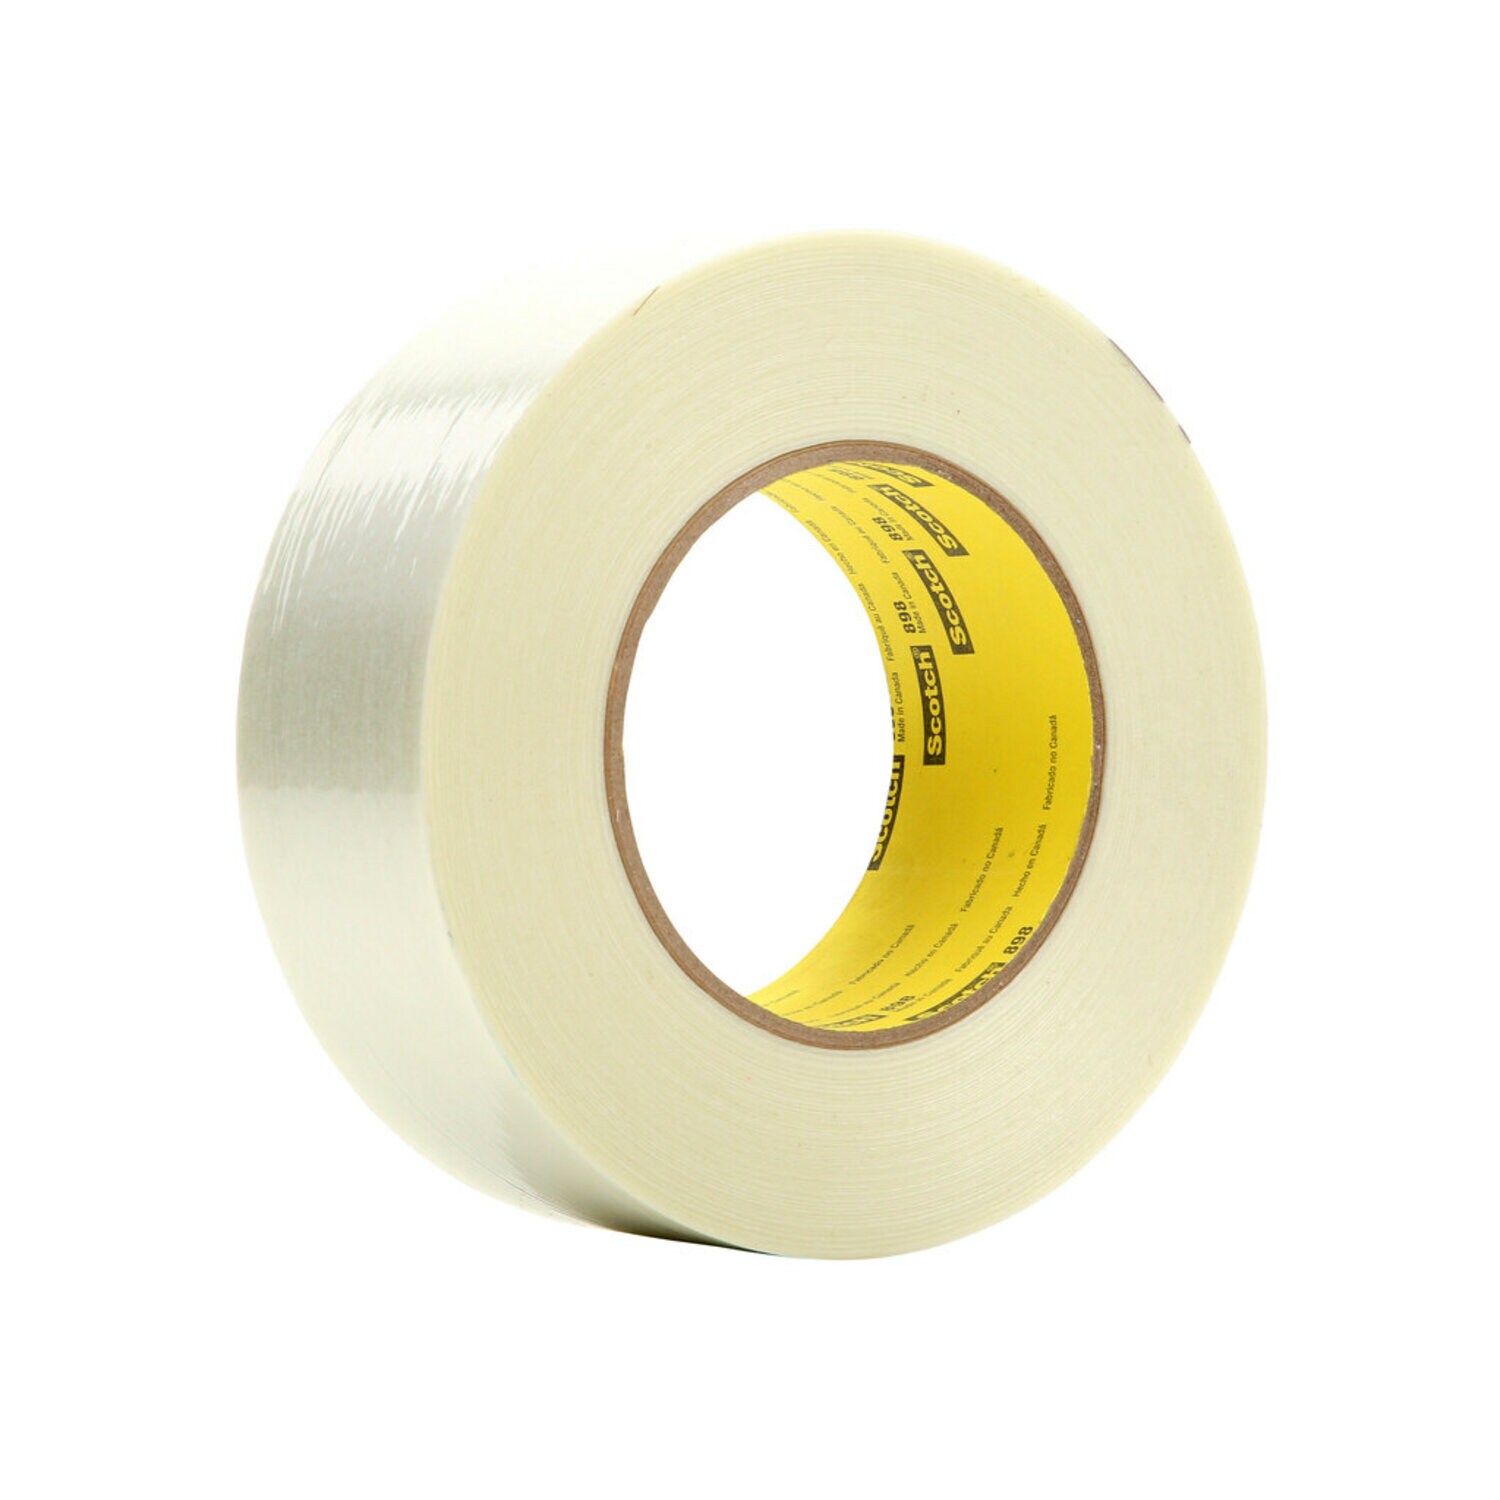 7000124747 - Scotch Filament Tape 898, Clear, 36 mm x 110 m, 6.6 mil, 24 rolls per
case